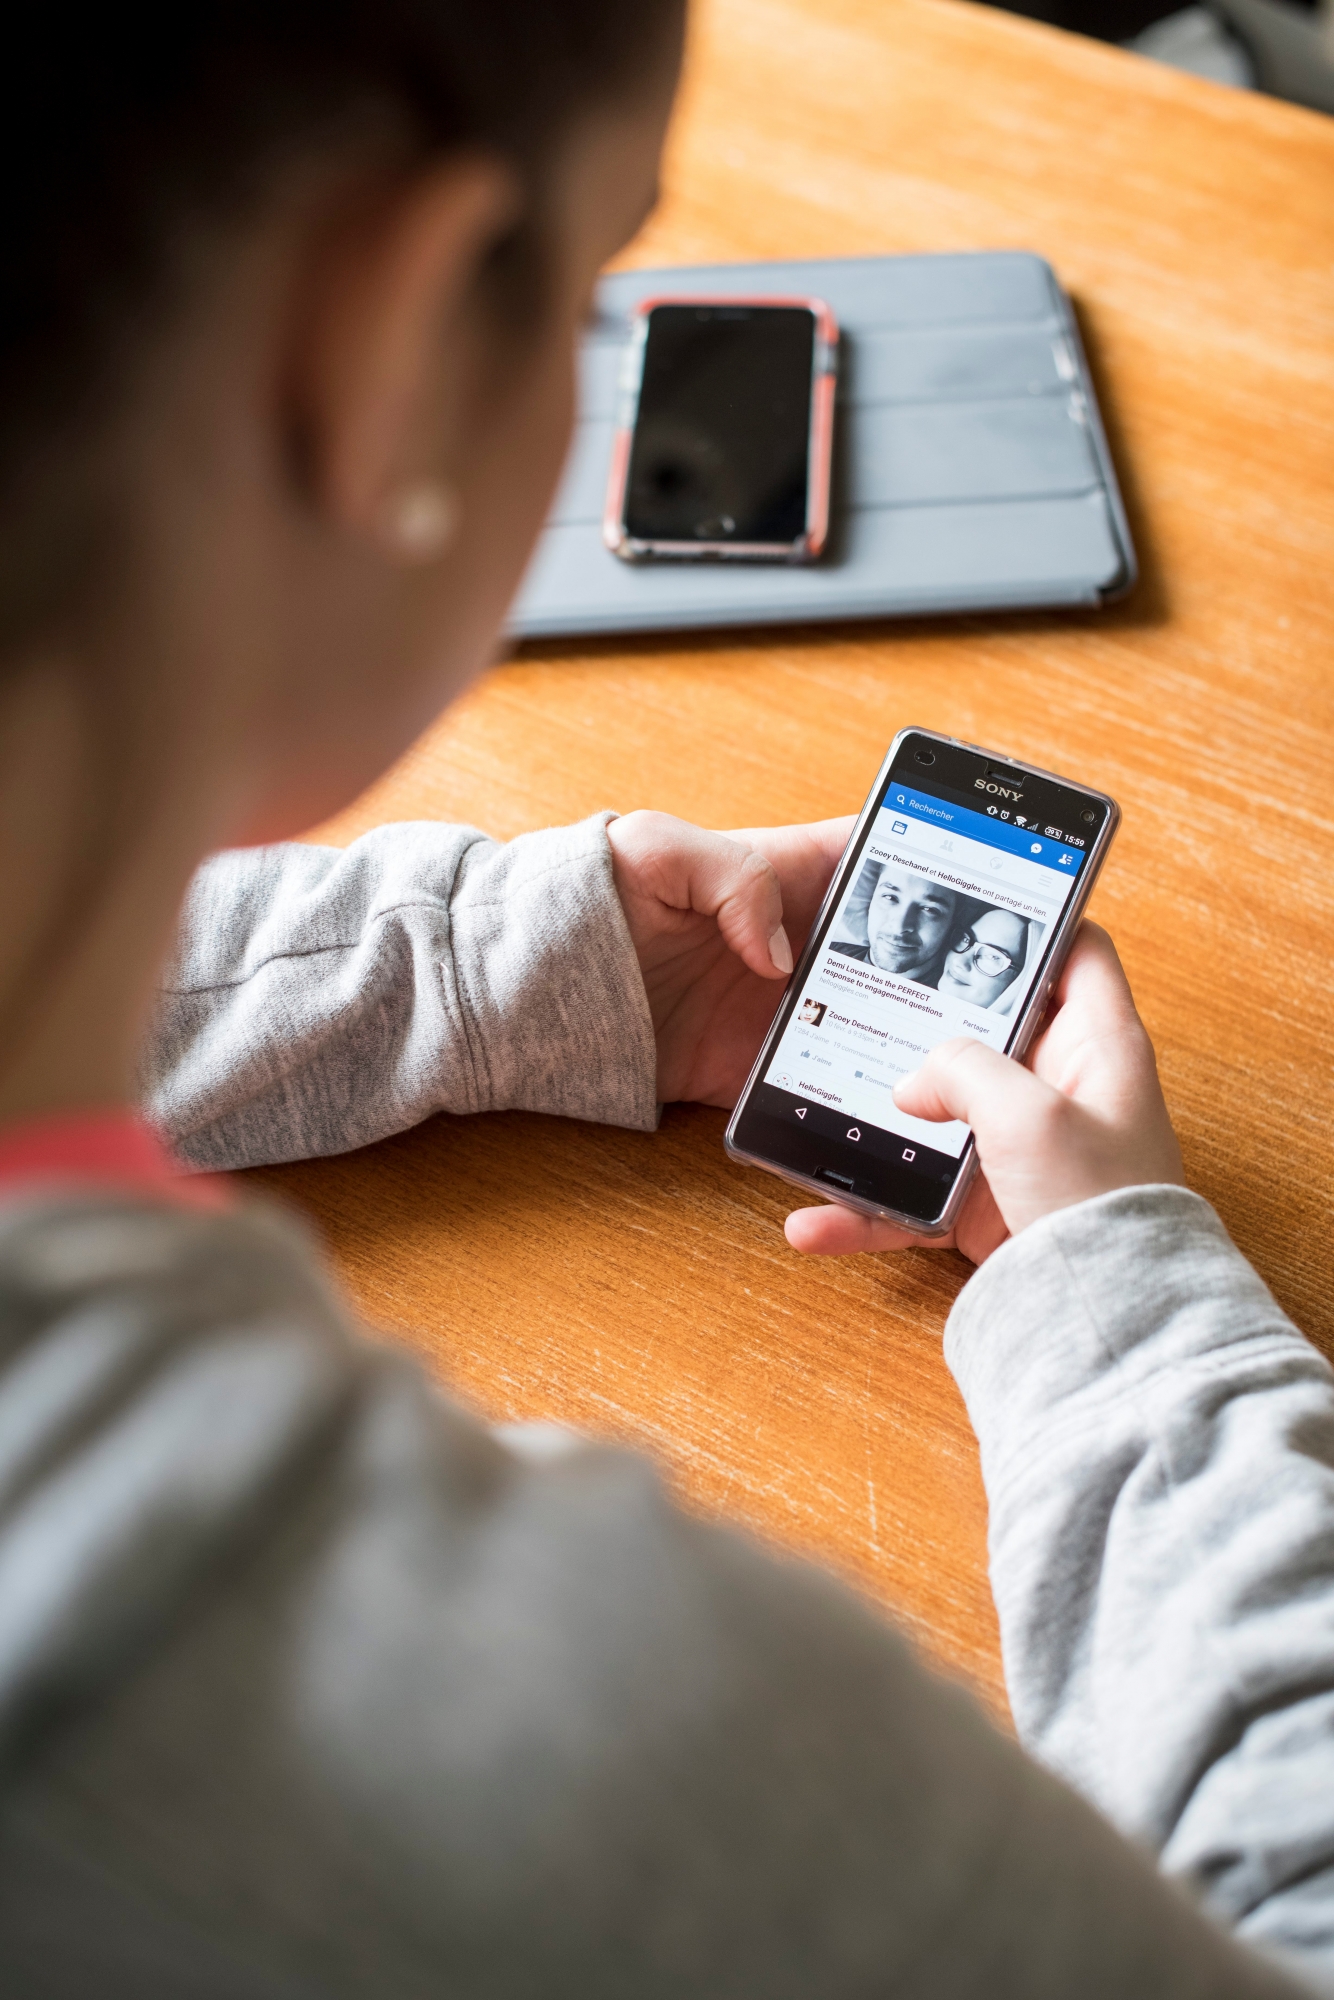 Une jeune femme utilise son telepone portable 

Images d'illustration sur les smartphones et les reseaux sociaux.



Neuchatel, le 11 fevrier 2016 

Photo : Lucas Vuitel